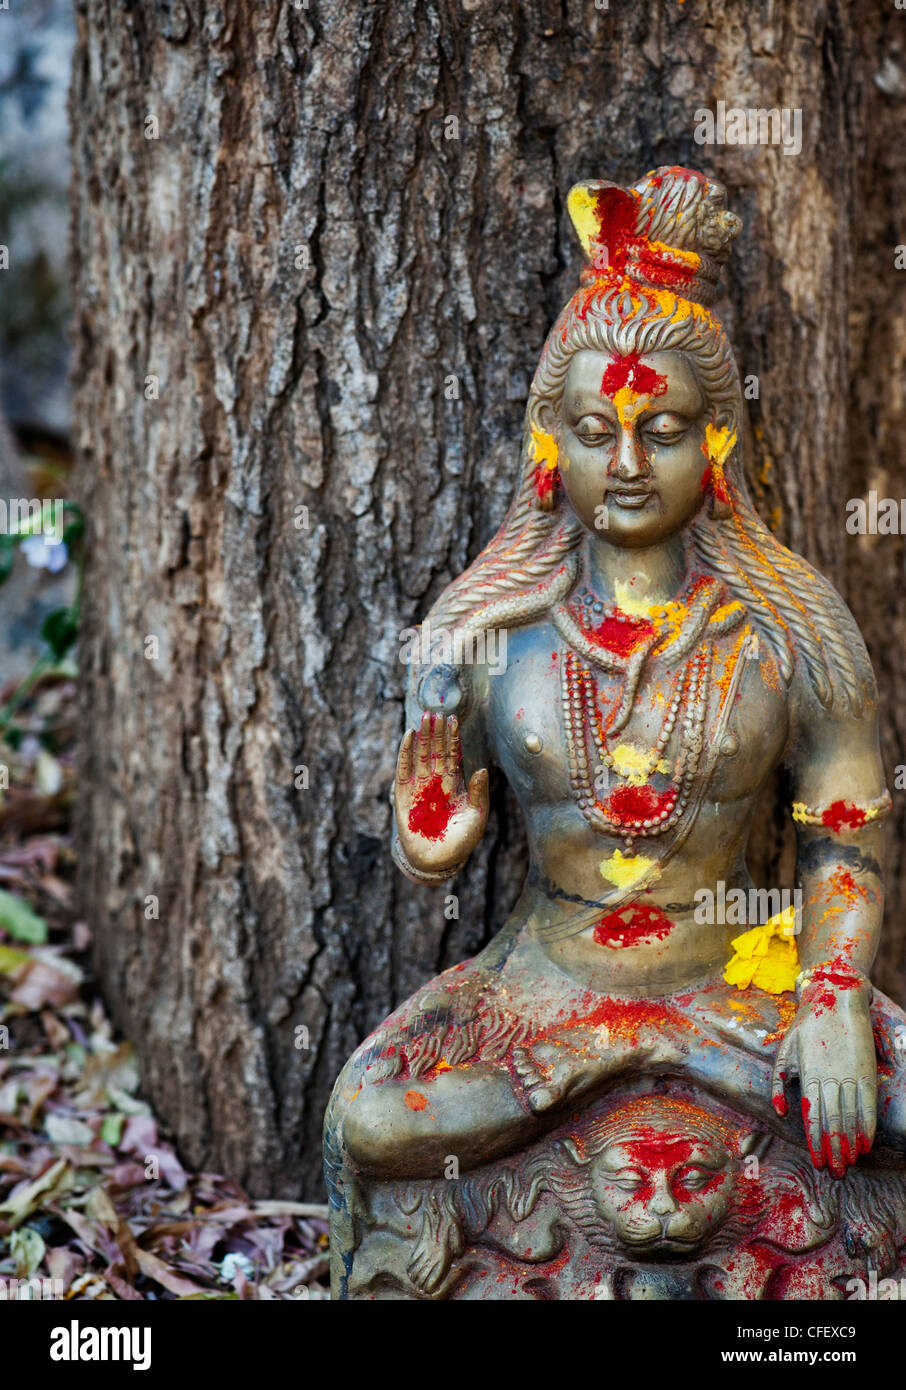 Indische Gottheit Statue, Lord Shiva gegen einen Baum in der indischen Landschaft Stockfoto